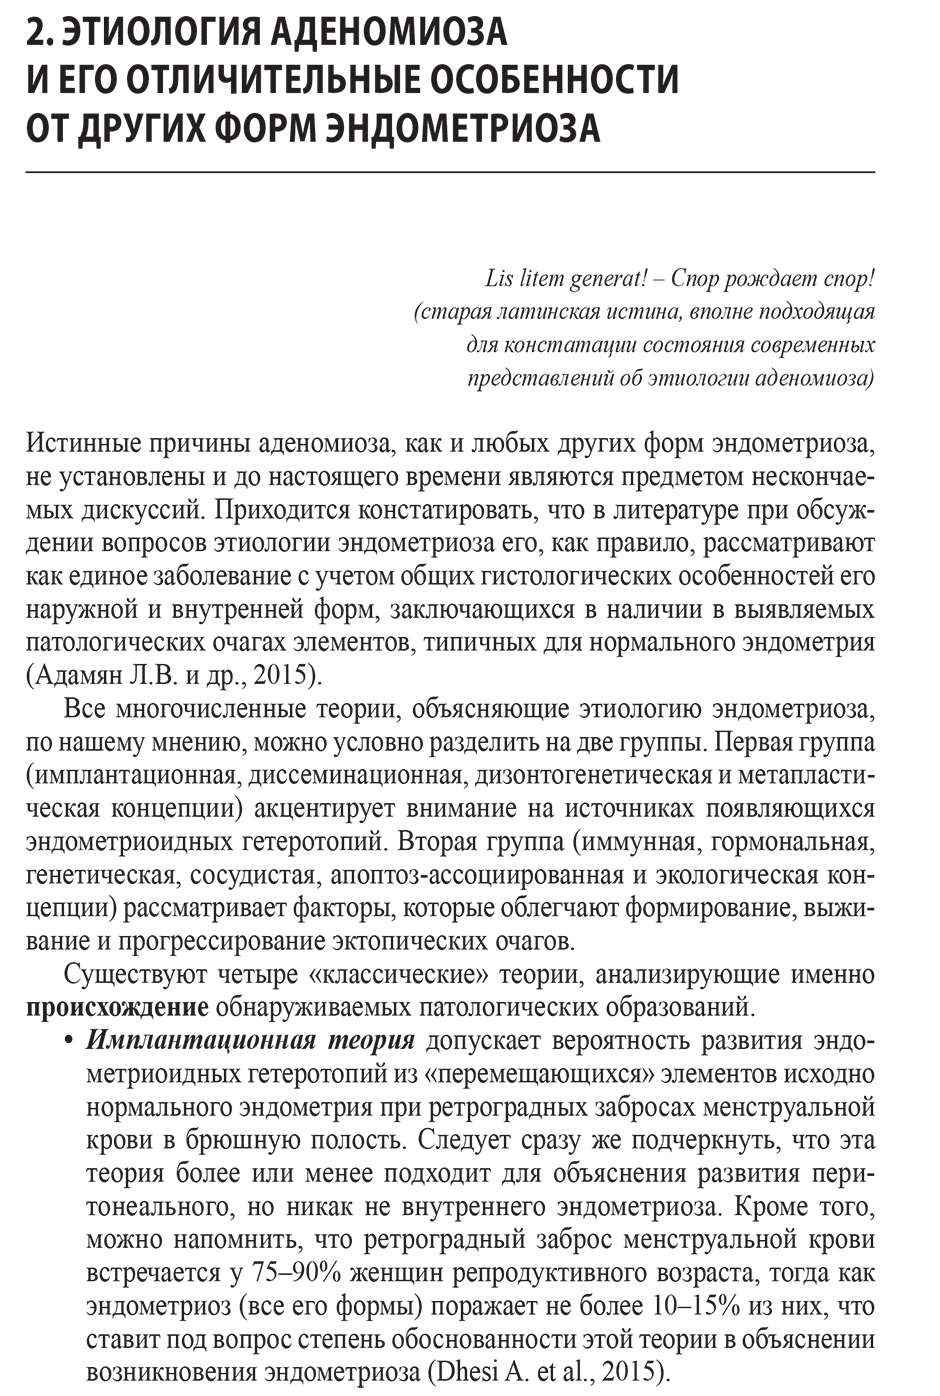 Пример страницы из книги "ЭКО в современных алгоритмах лечения бесплодия при аденомиозе" - Краснопольская К. В.